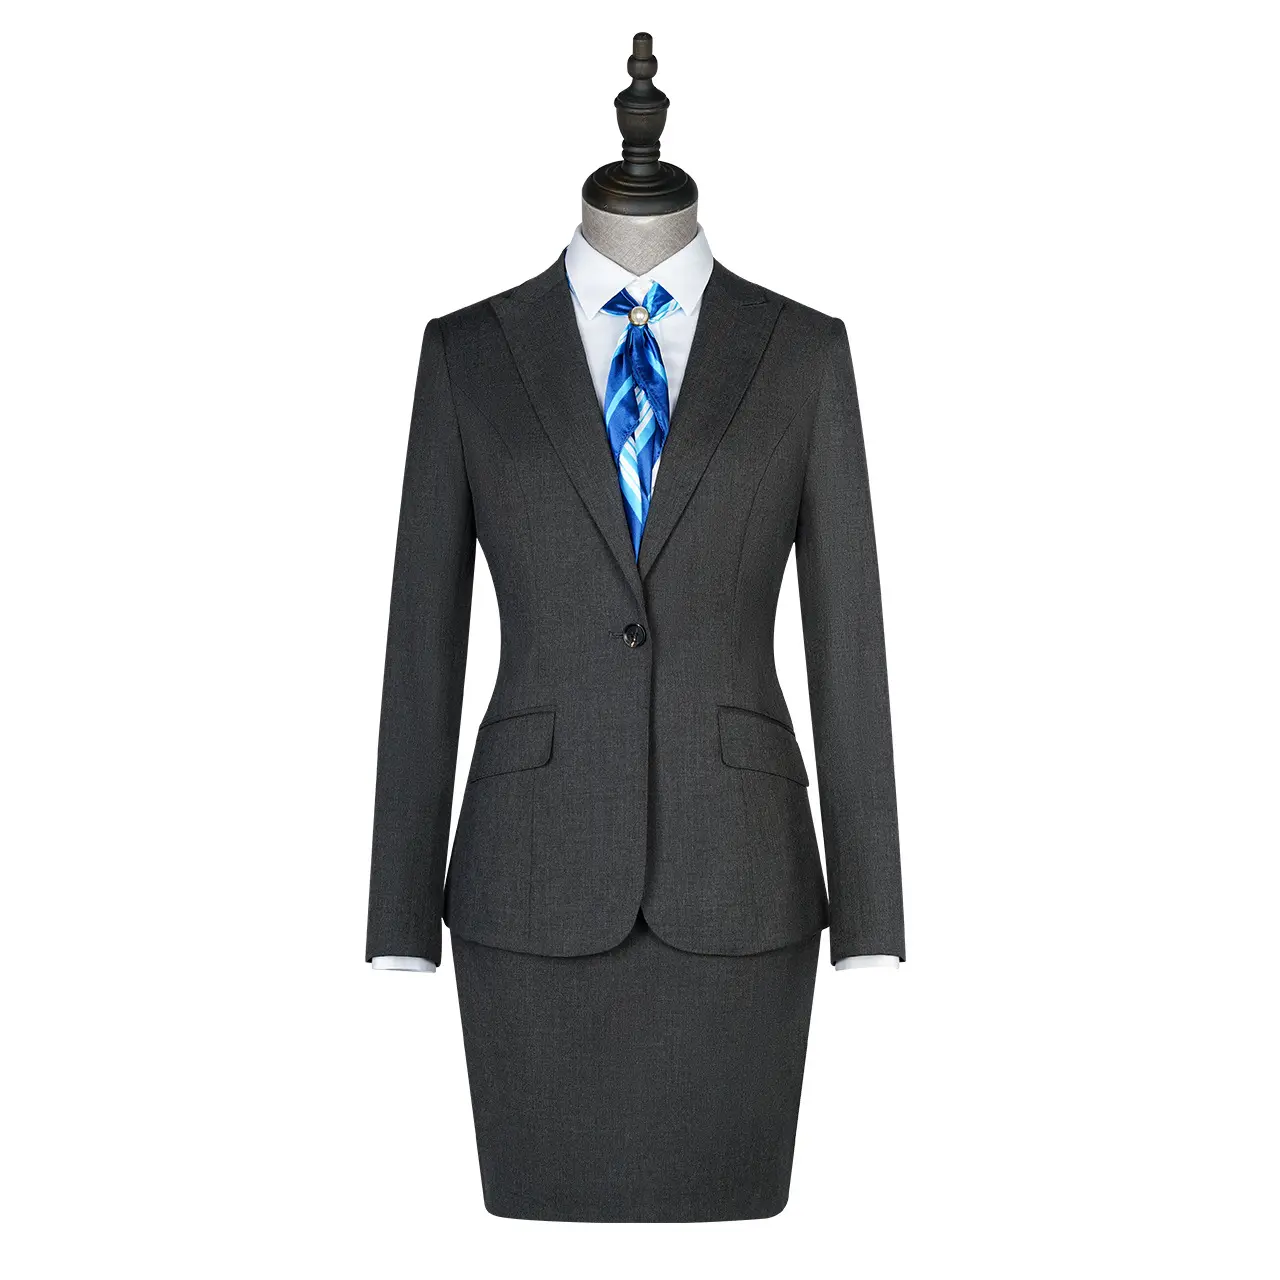 Para medida oficial de dos piezas conjunto de traje de 2 piezas, chaqueta de oficina de negocios formal trajes de falda para las mujeres con falda